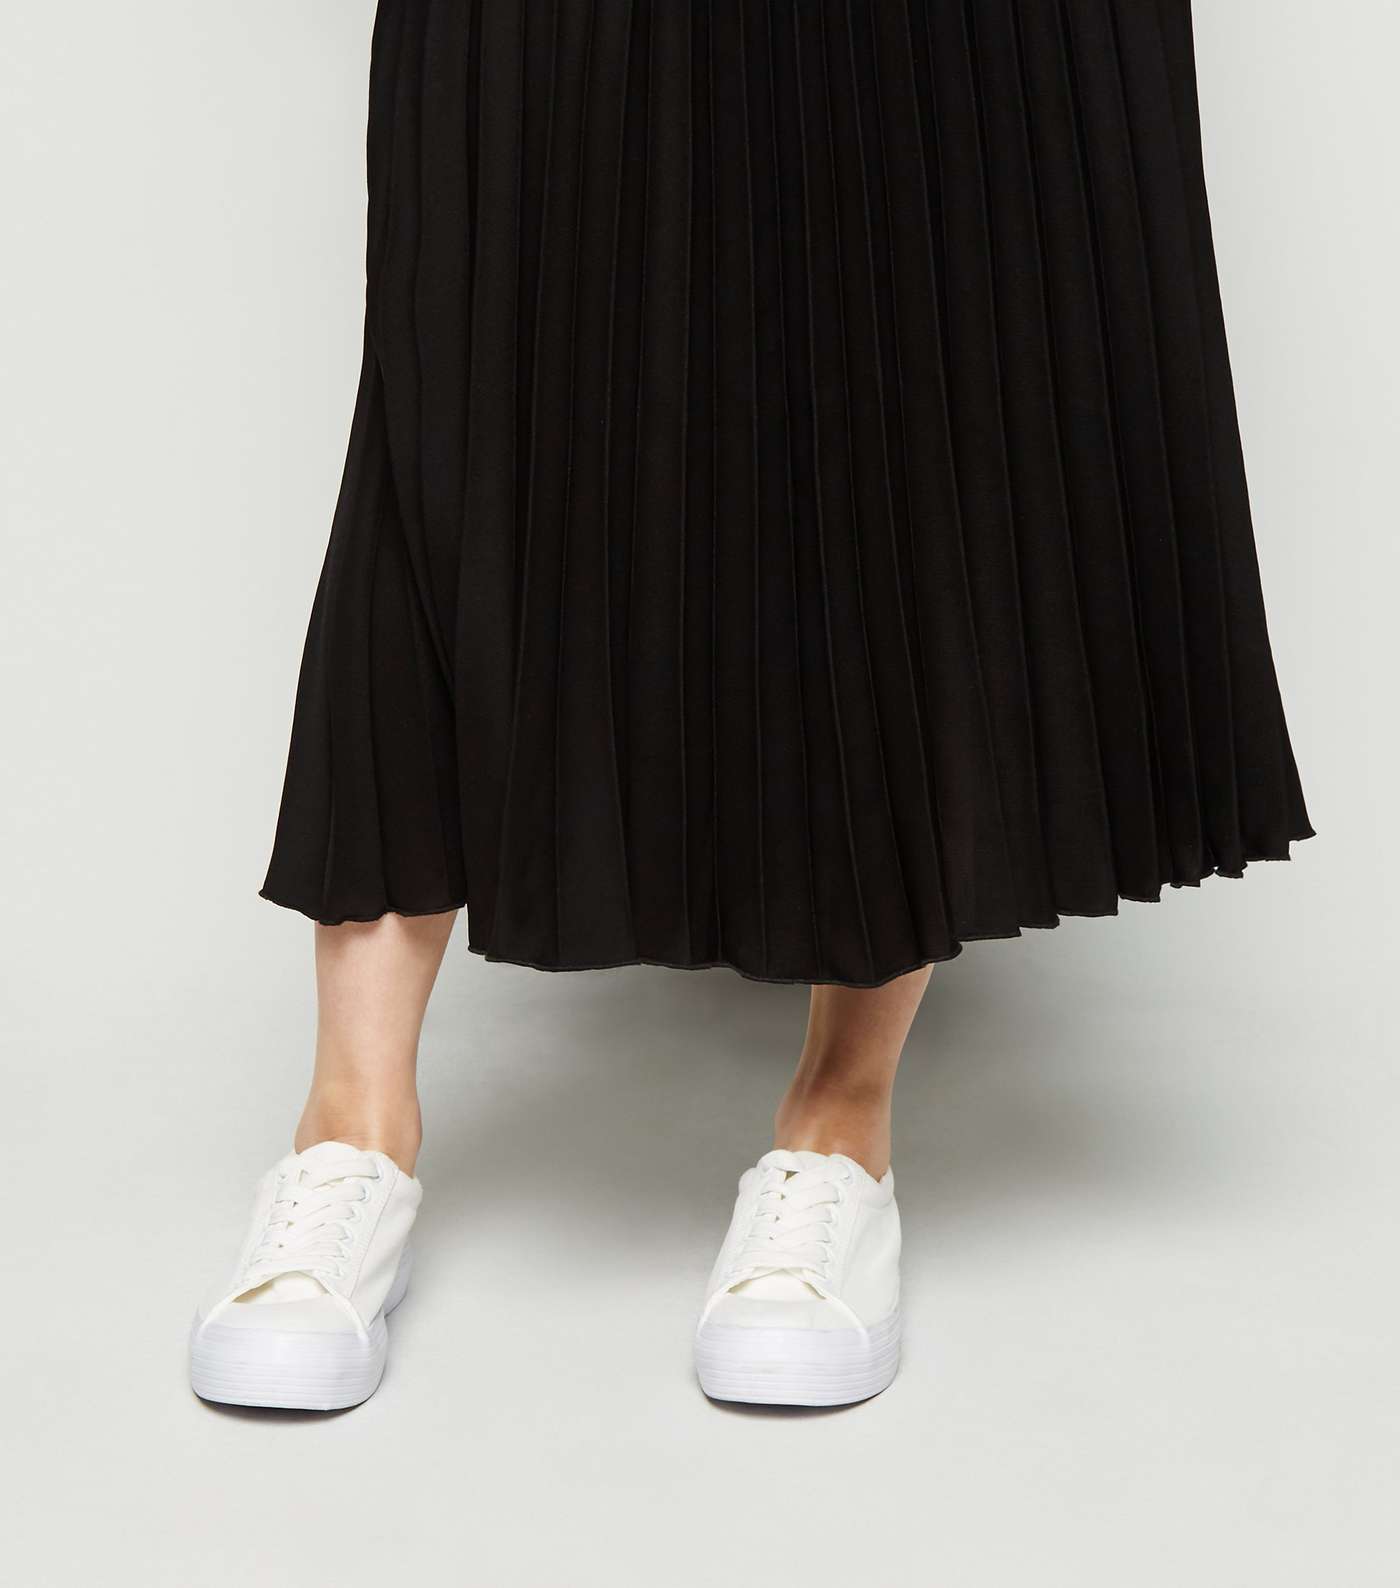 Petite Black Pleated Midi Skirt Image 5